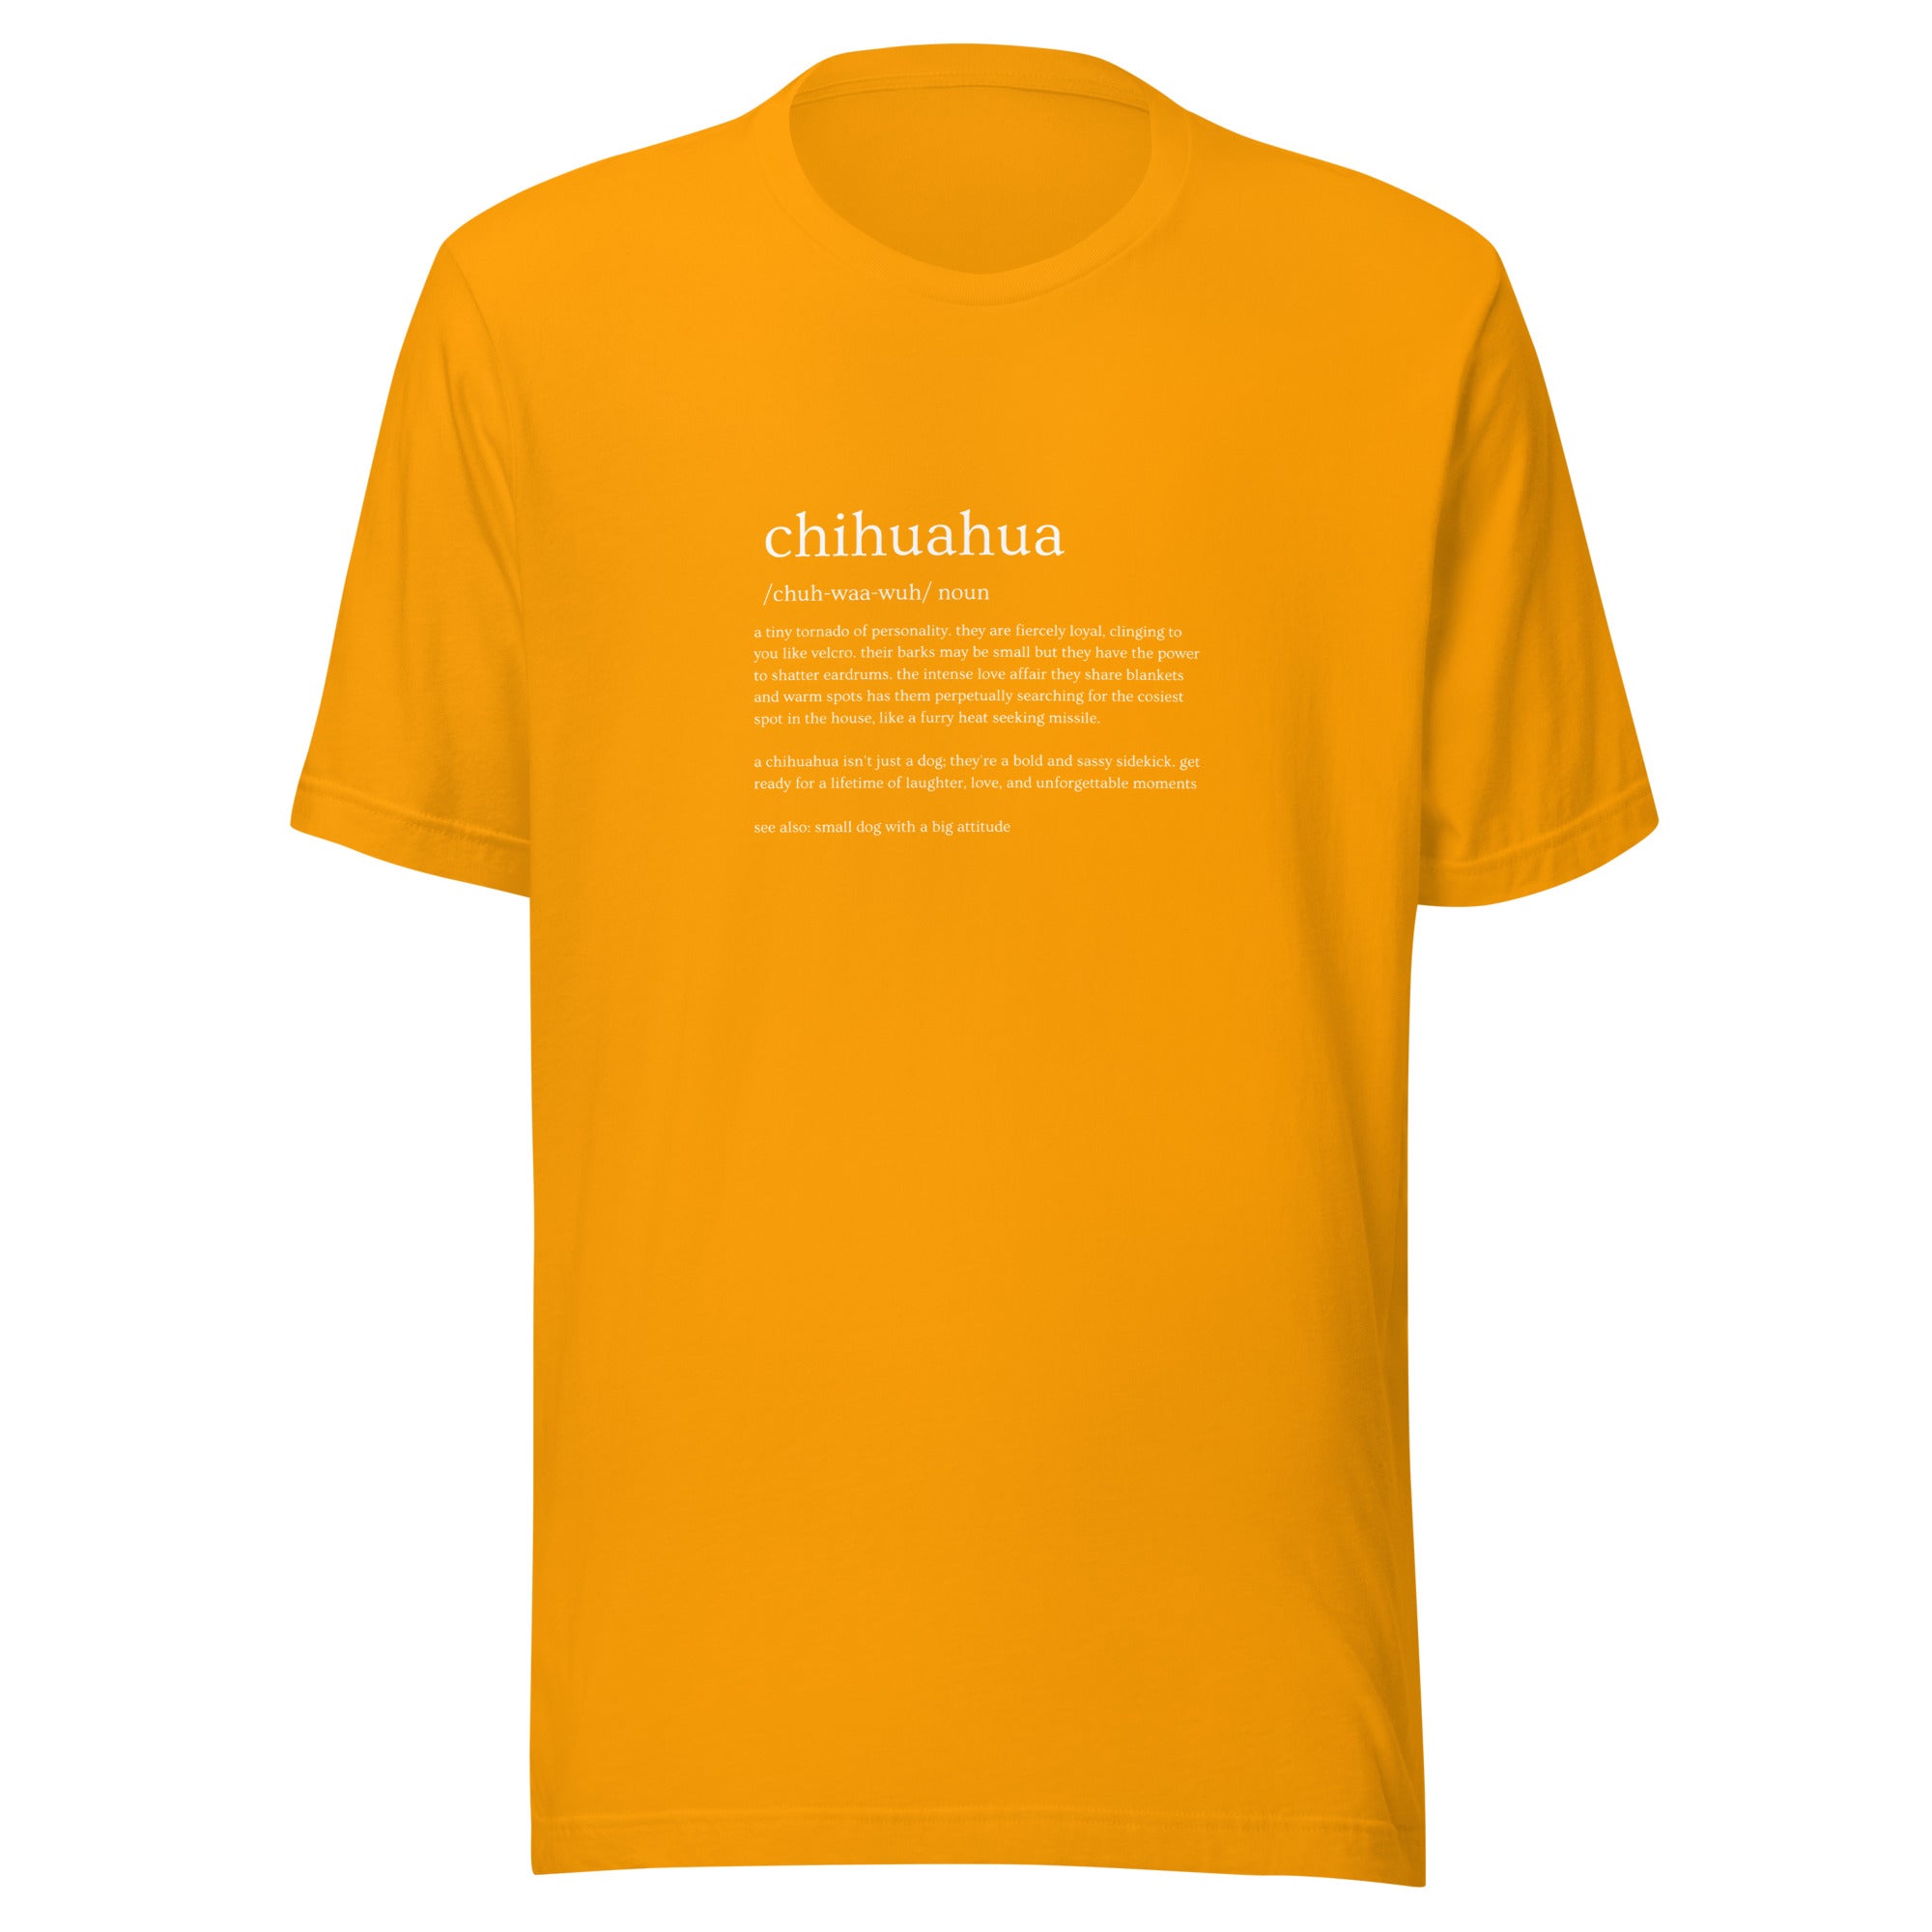 Chihuahua Definition Women's T-Shirt